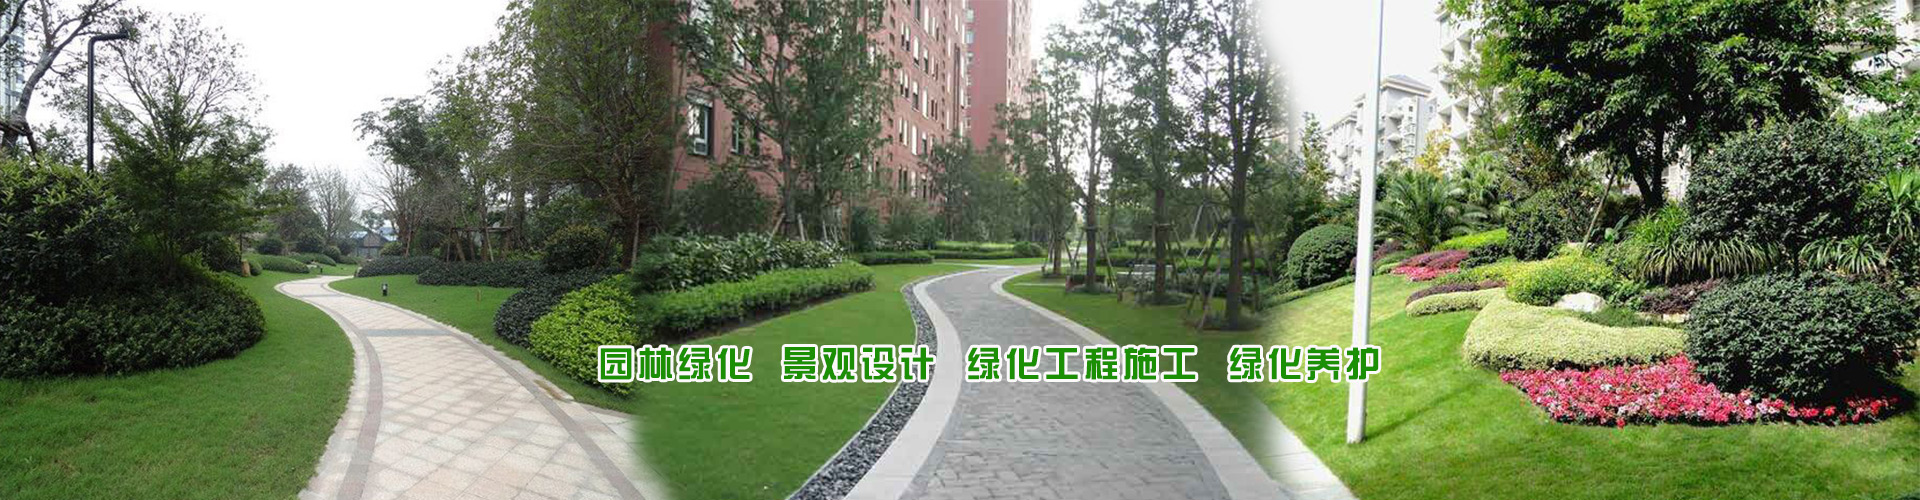 上海绿化工程/上海绿化养护/上海别墅绿化/上海厂区绿化上海绿